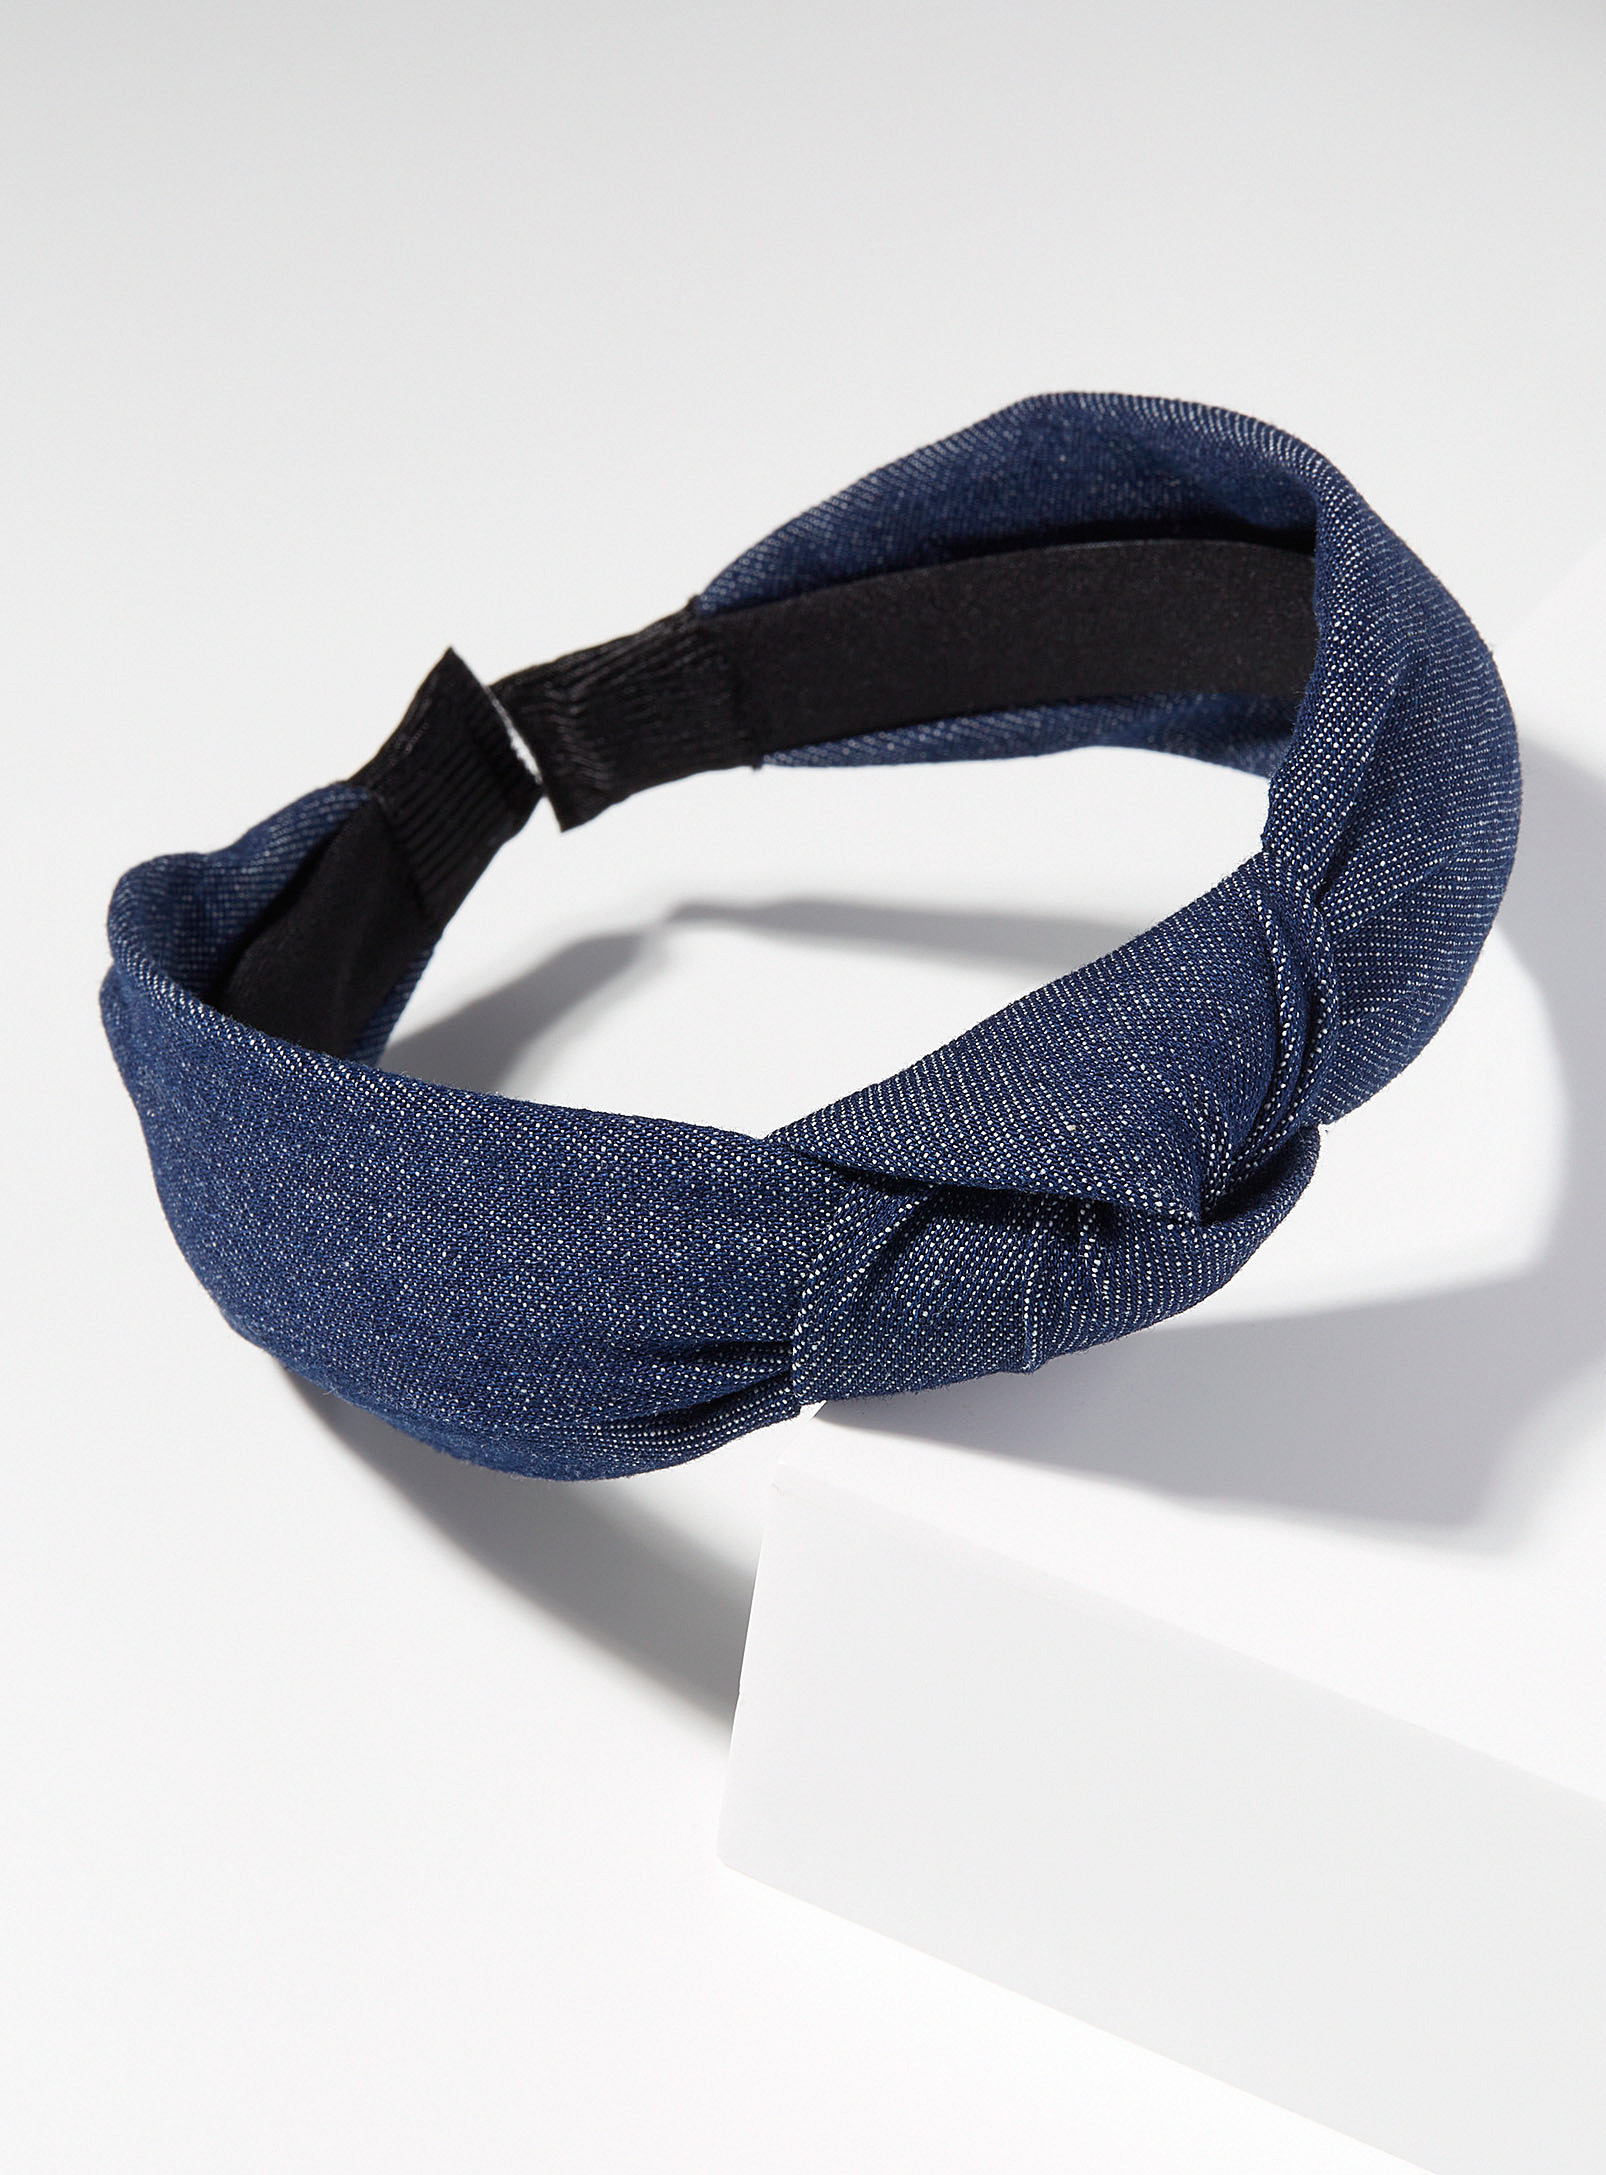 Simons - Women's Dark denim knotted headband